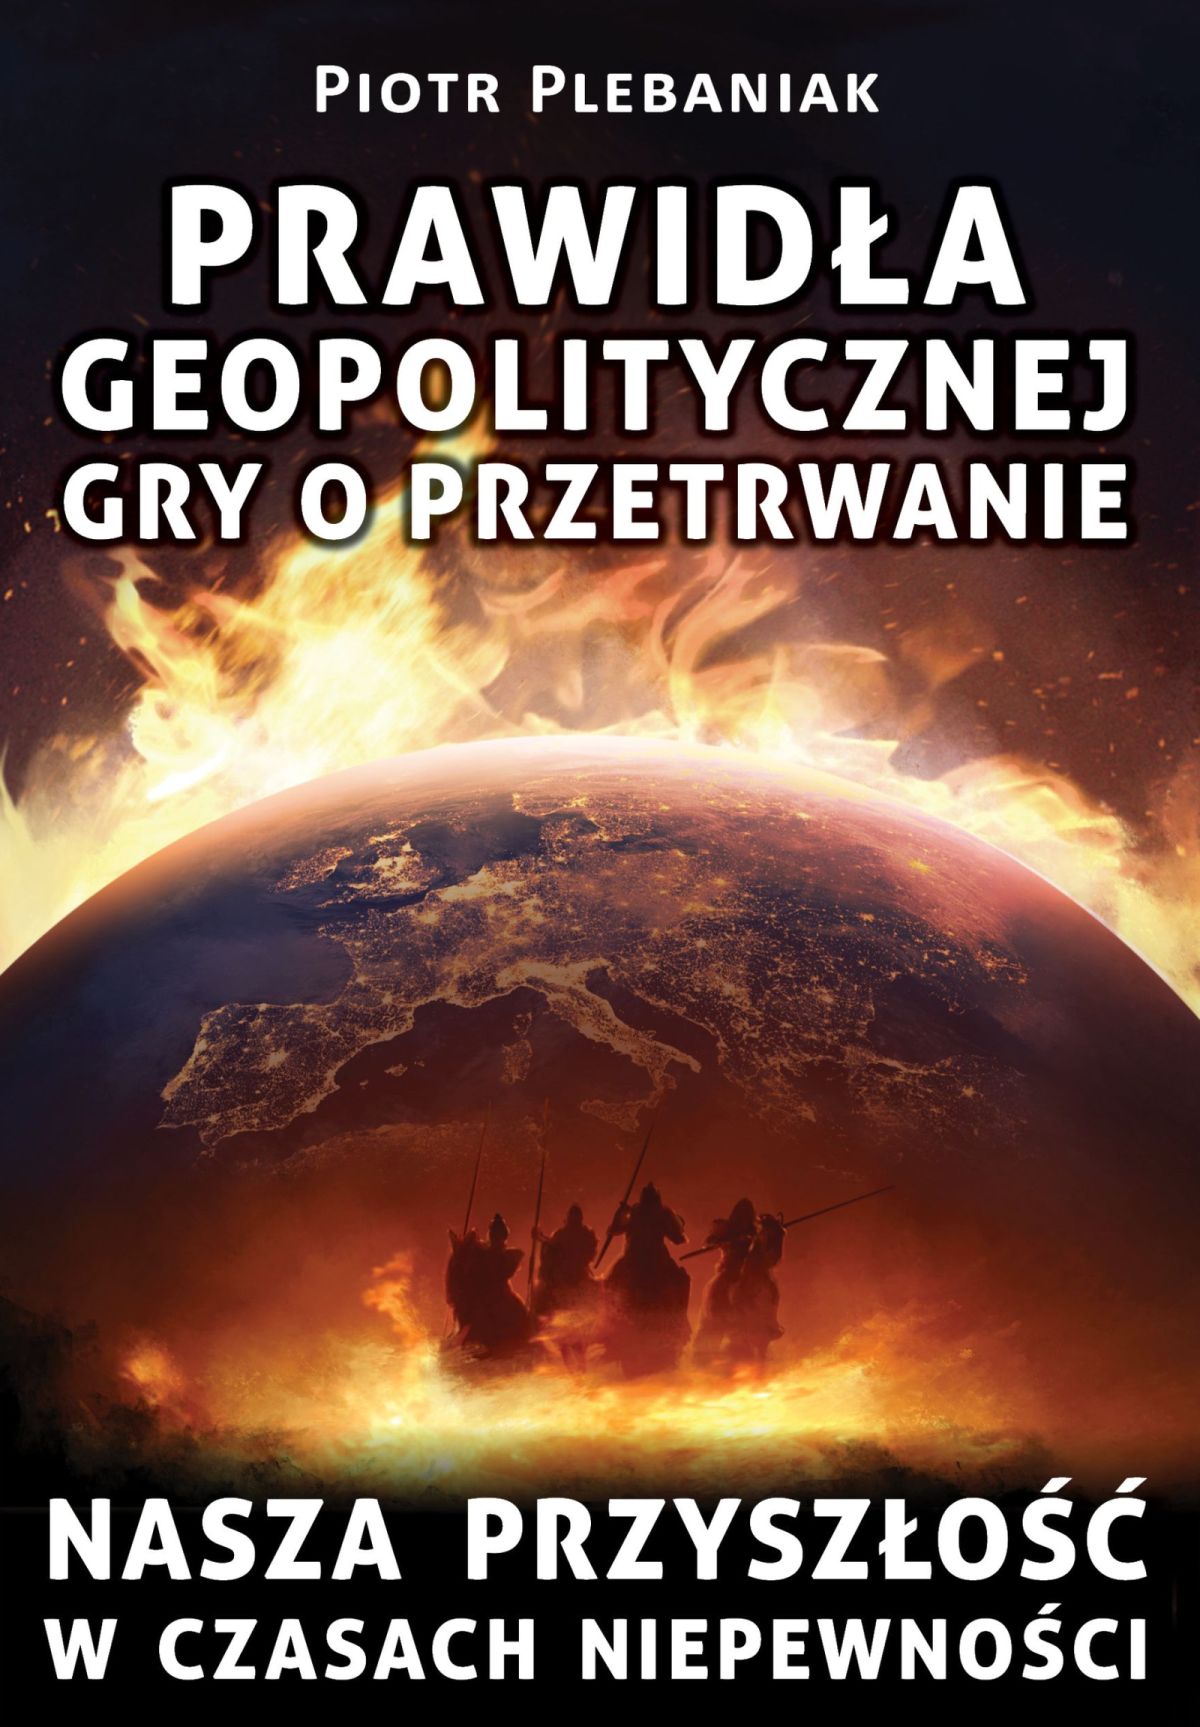  | Piotr Plebaniak, Prawidła geopolitycznej gry o przetrwanie 